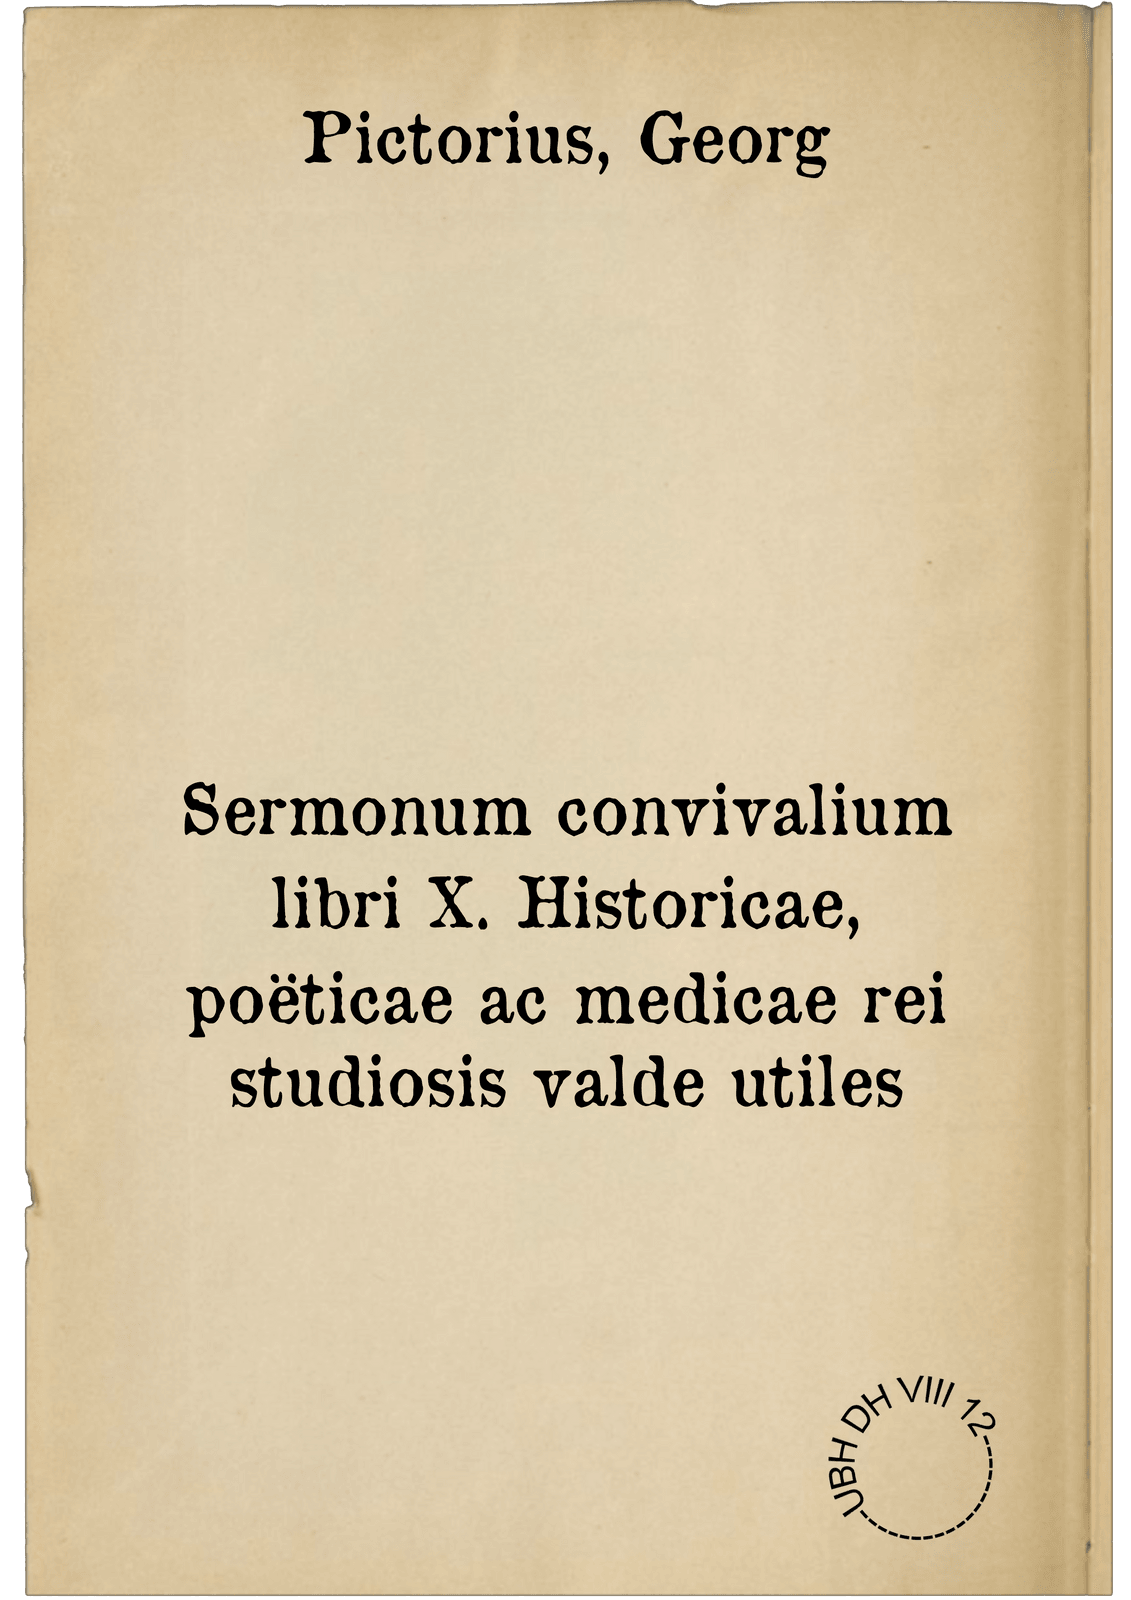 Sermonum convivalium libri X. Historicae, poëticae ac medicae rei studiosis valde utiles